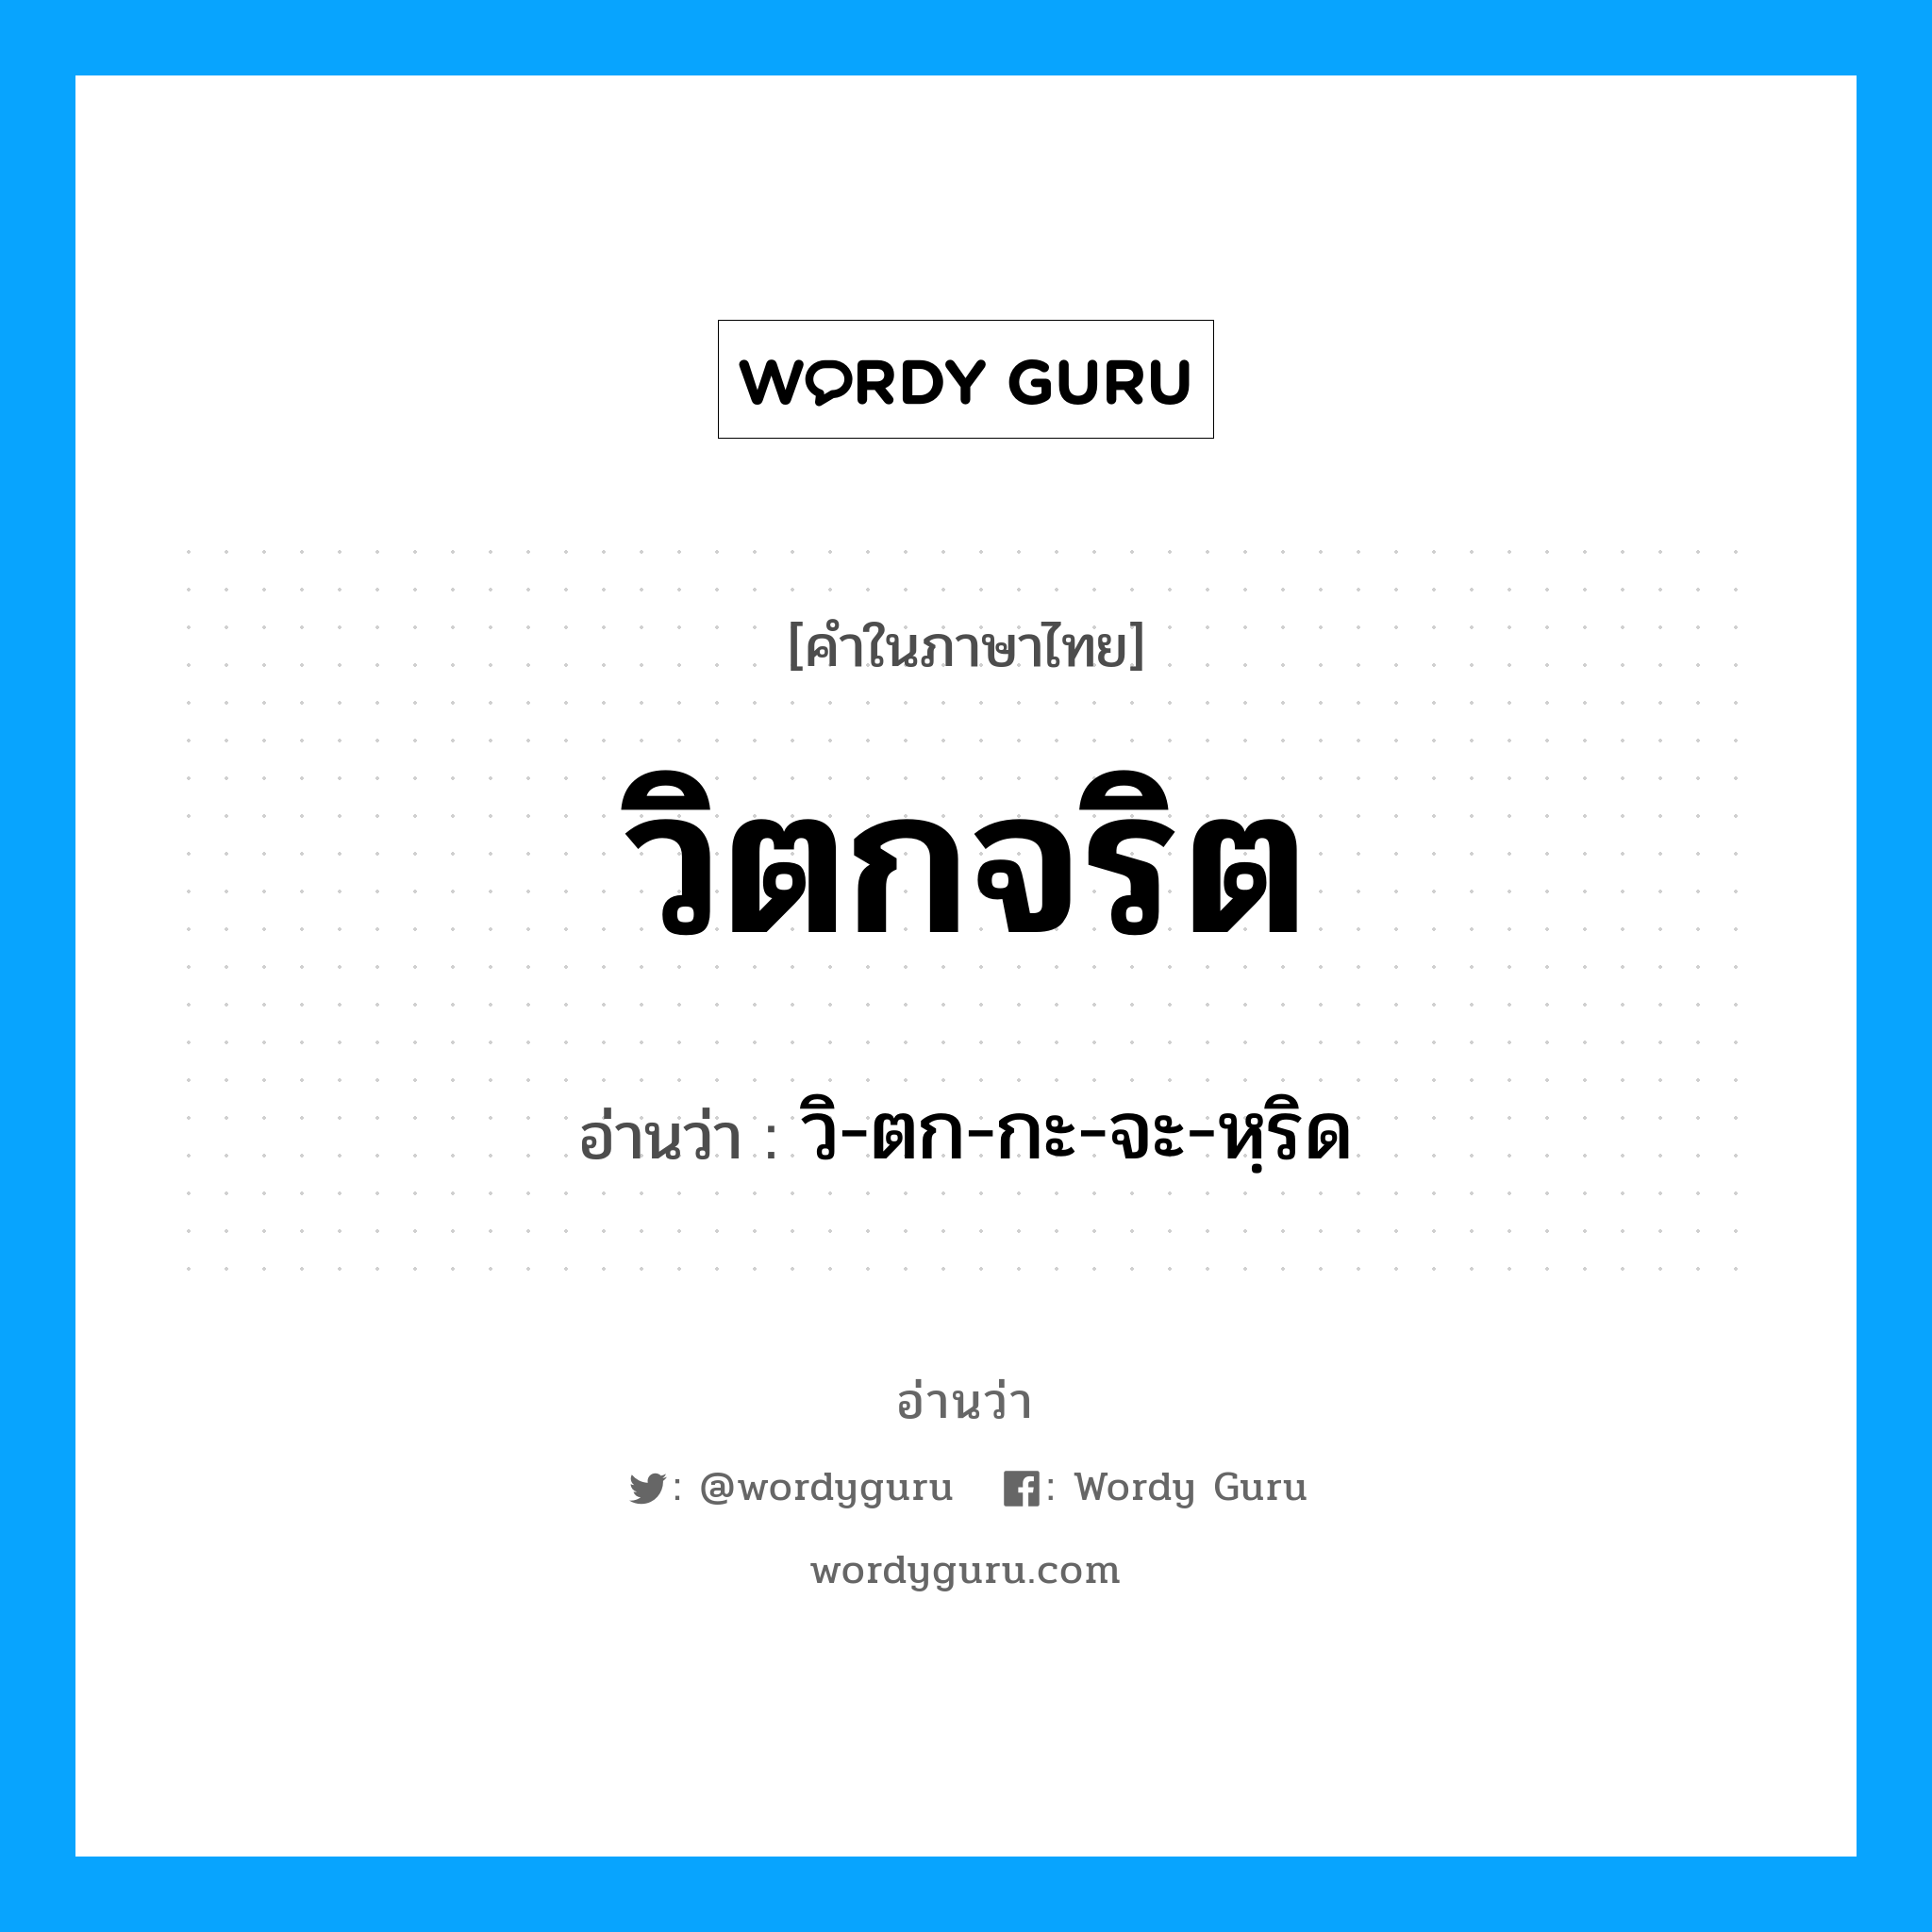 วิ-ตก-กะ-จะ-หฺริด เป็นคำอ่านของคำไหน?, คำในภาษาไทย วิ-ตก-กะ-จะ-หฺริด อ่านว่า วิตกจริต